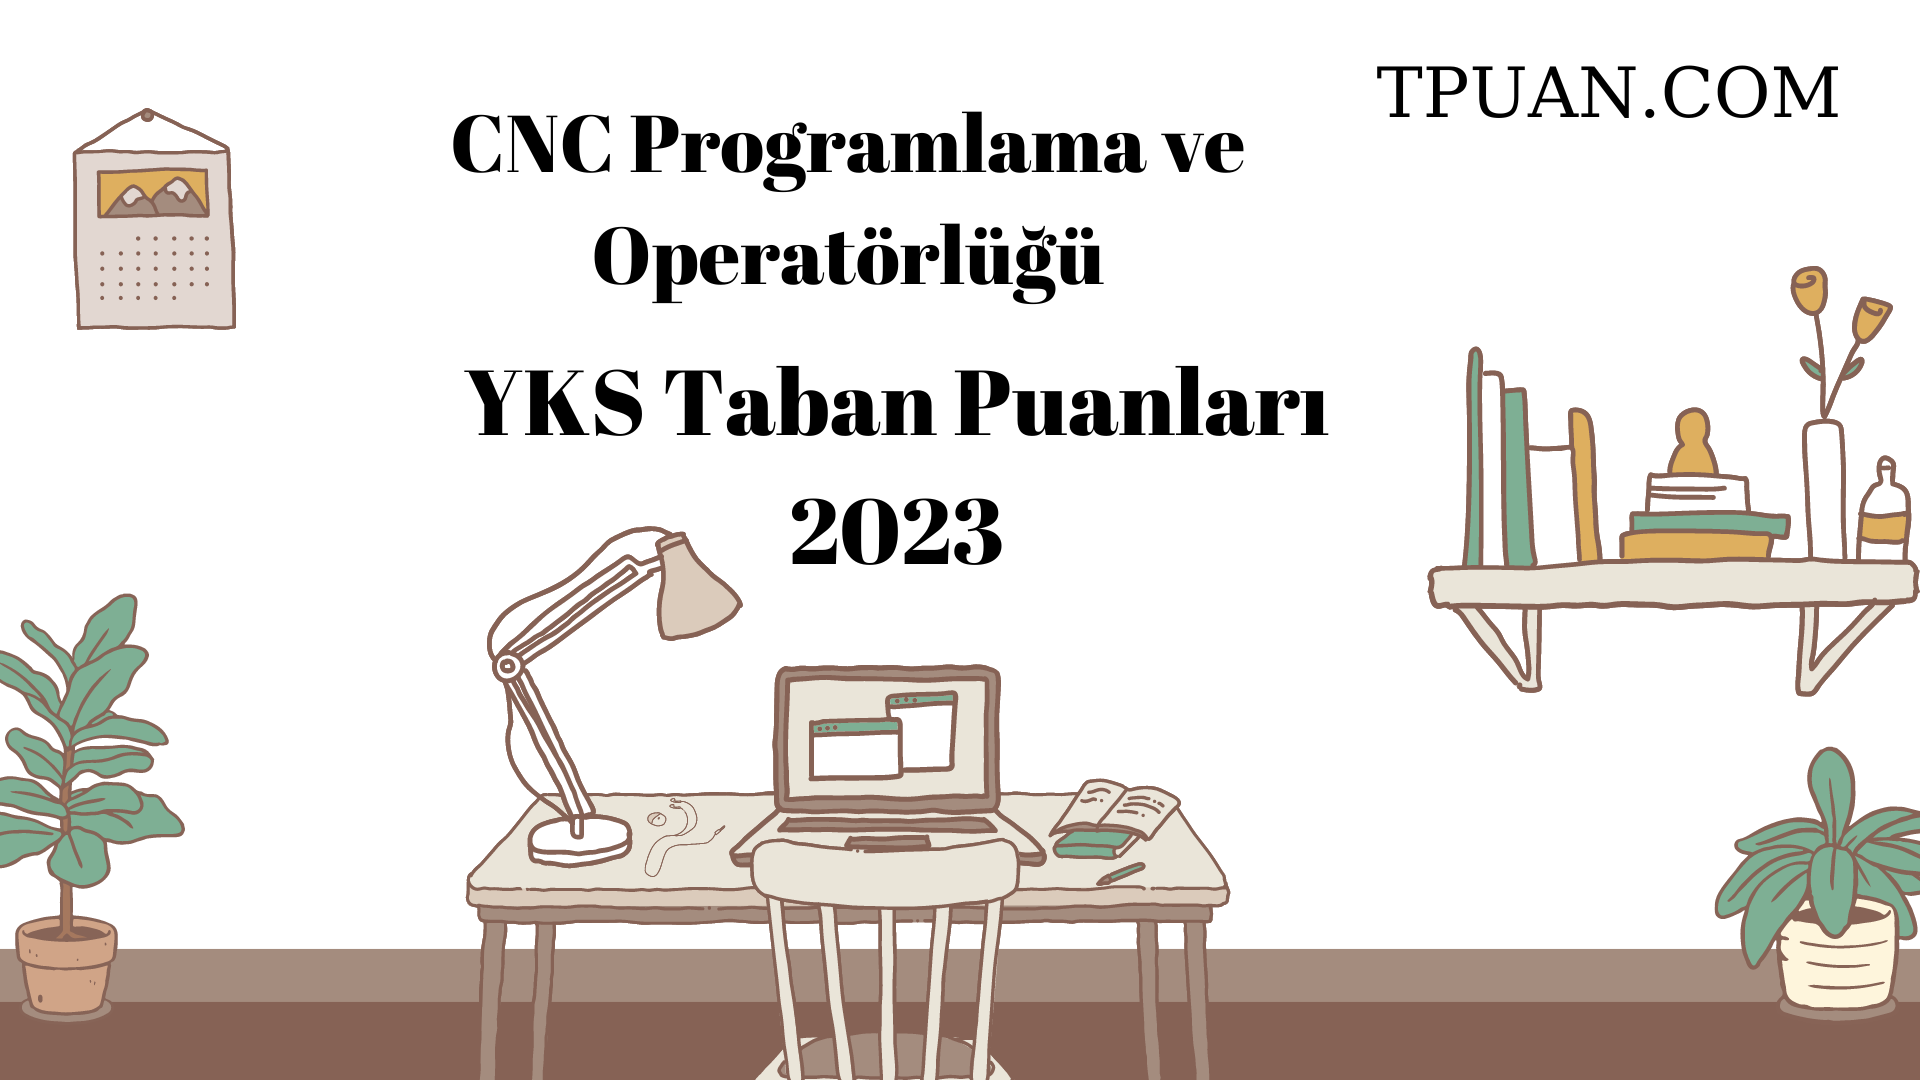  CNC Programlama ve Operatörlüğü YKS Taban Puanları 2023